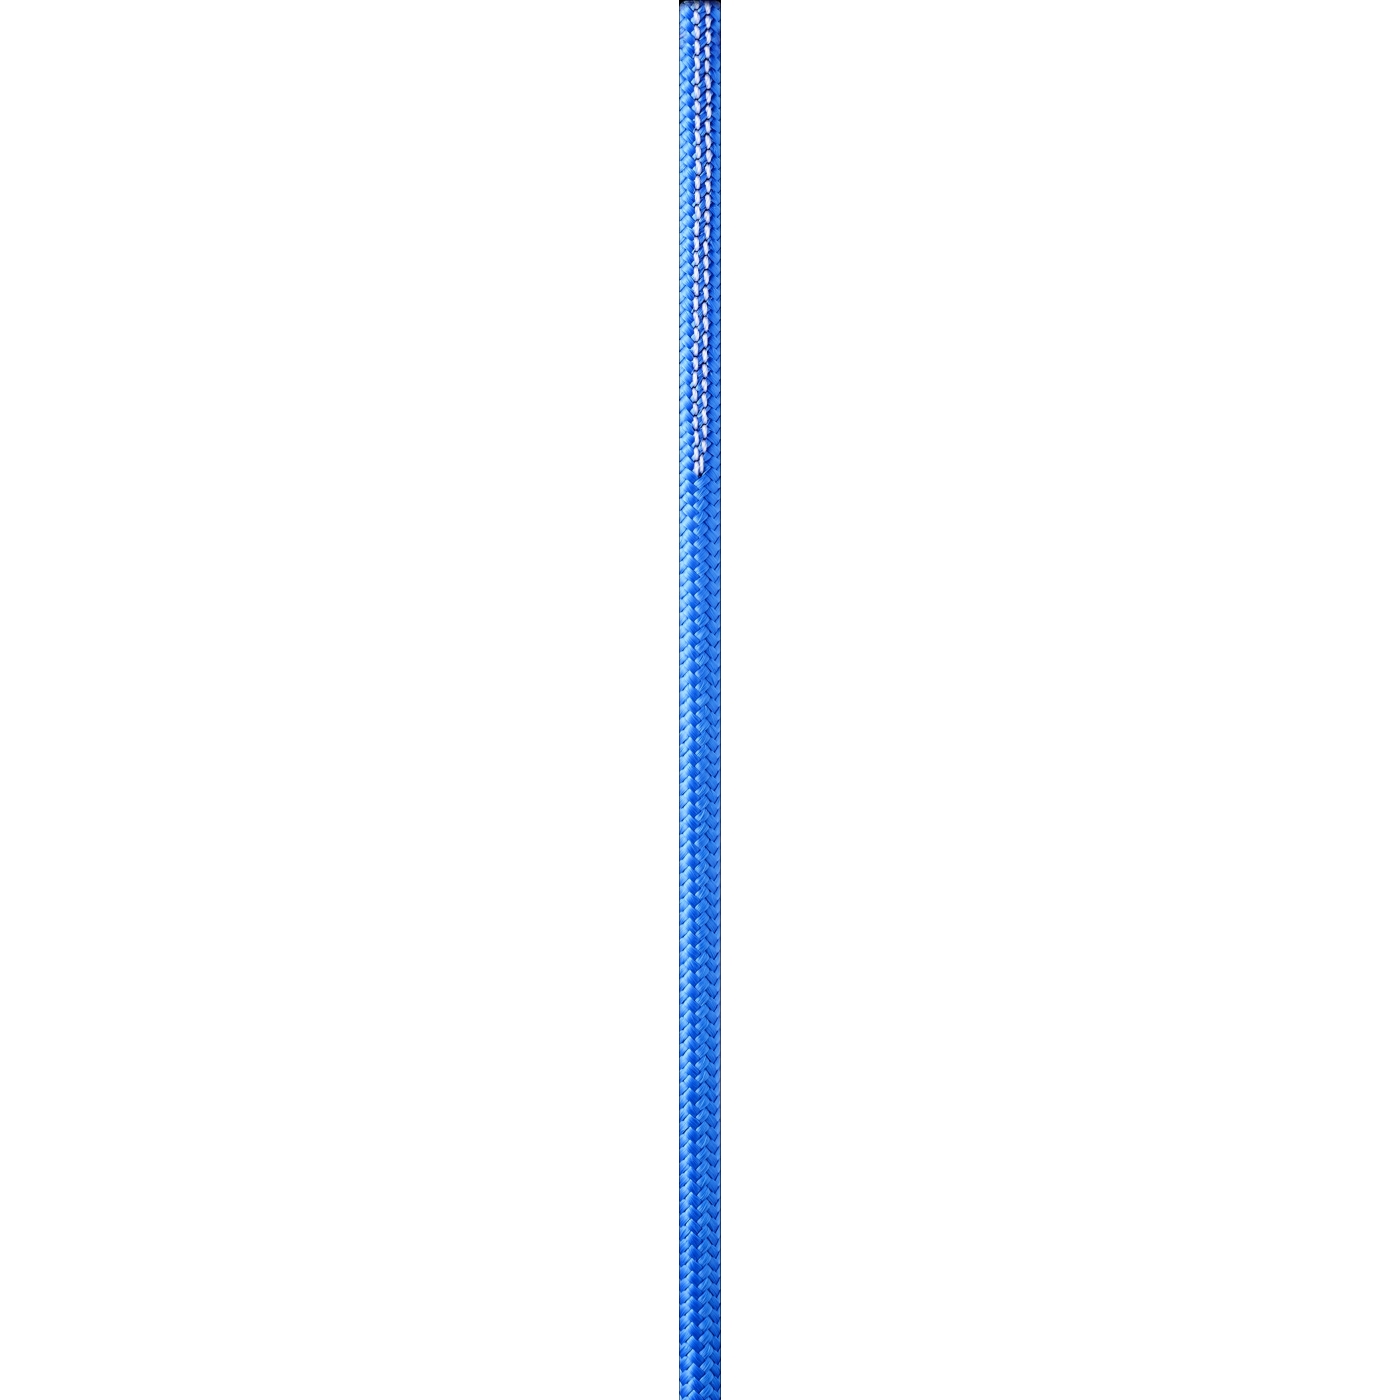 Produktbild von Edelrid Hard Line 6mm Reepschnur - 5 m - blue